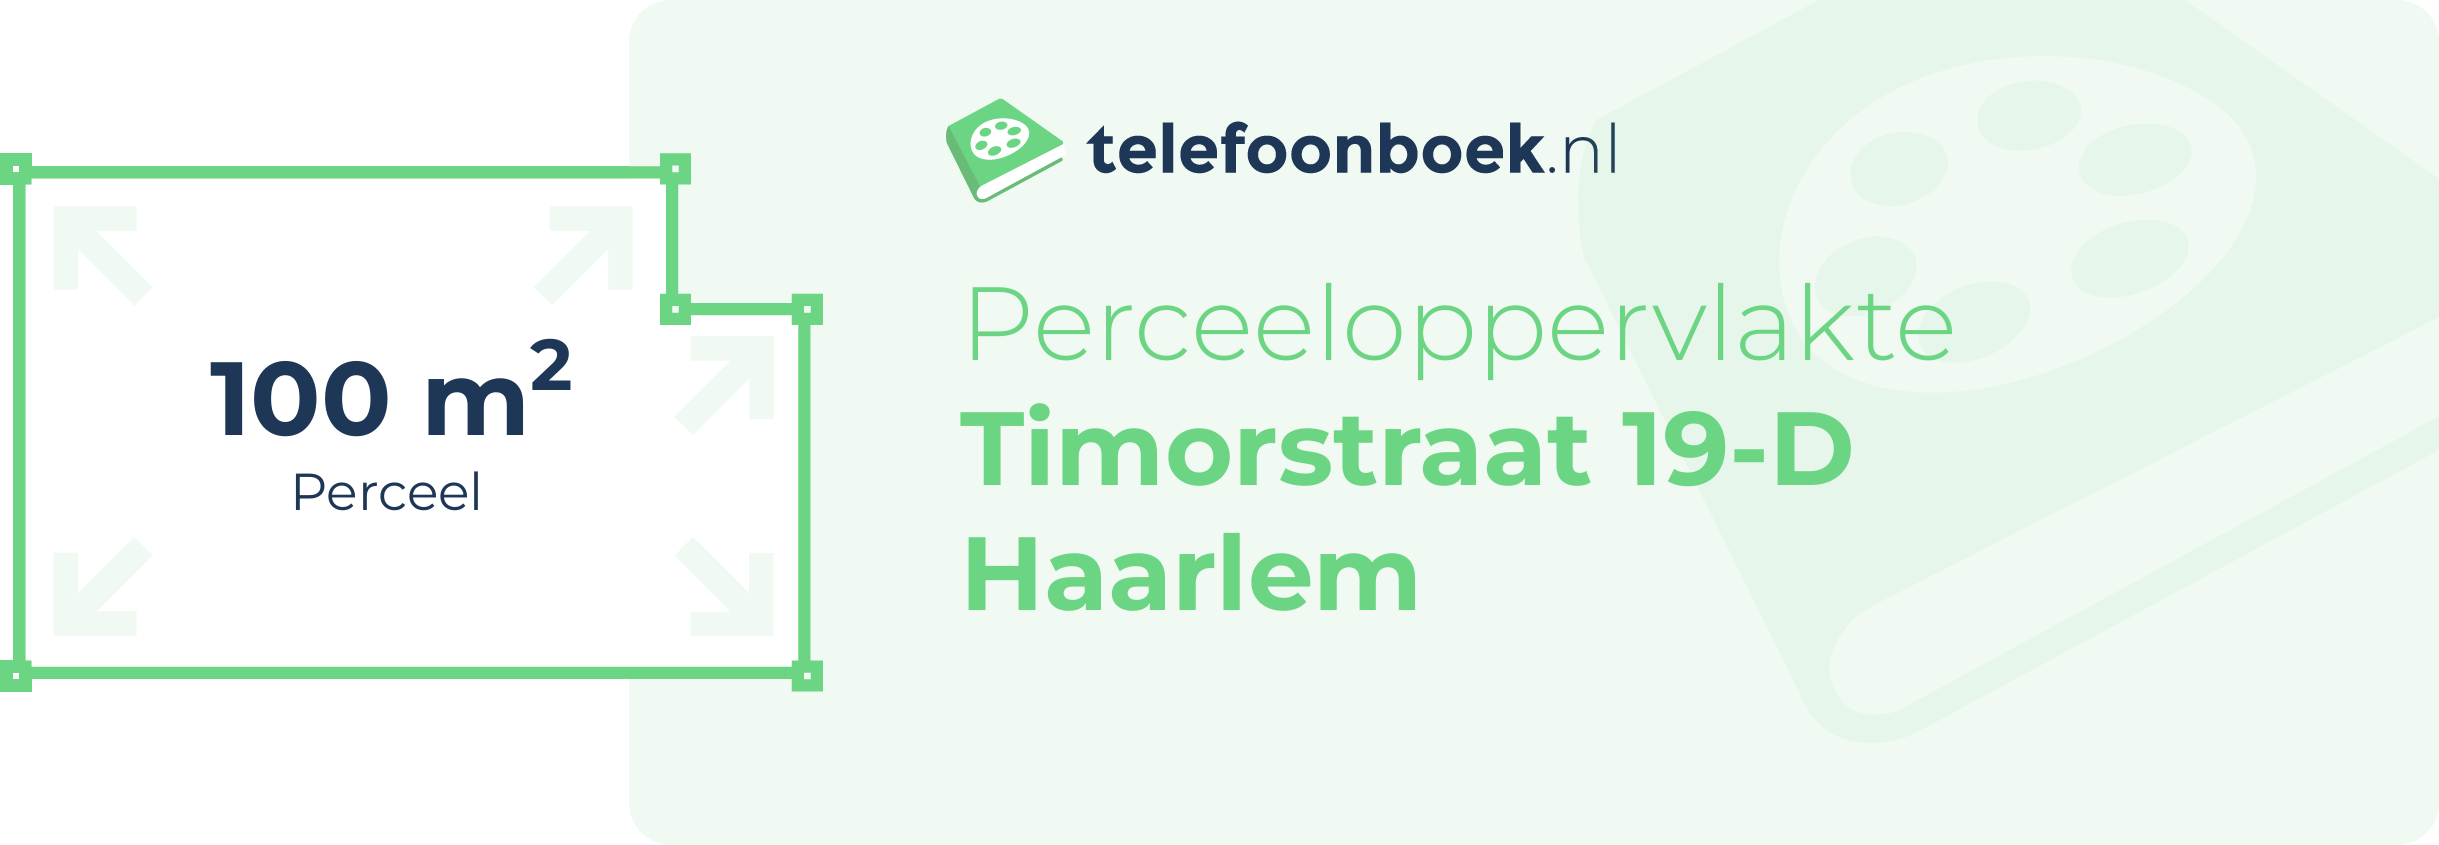 Perceeloppervlakte Timorstraat 19-D Haarlem